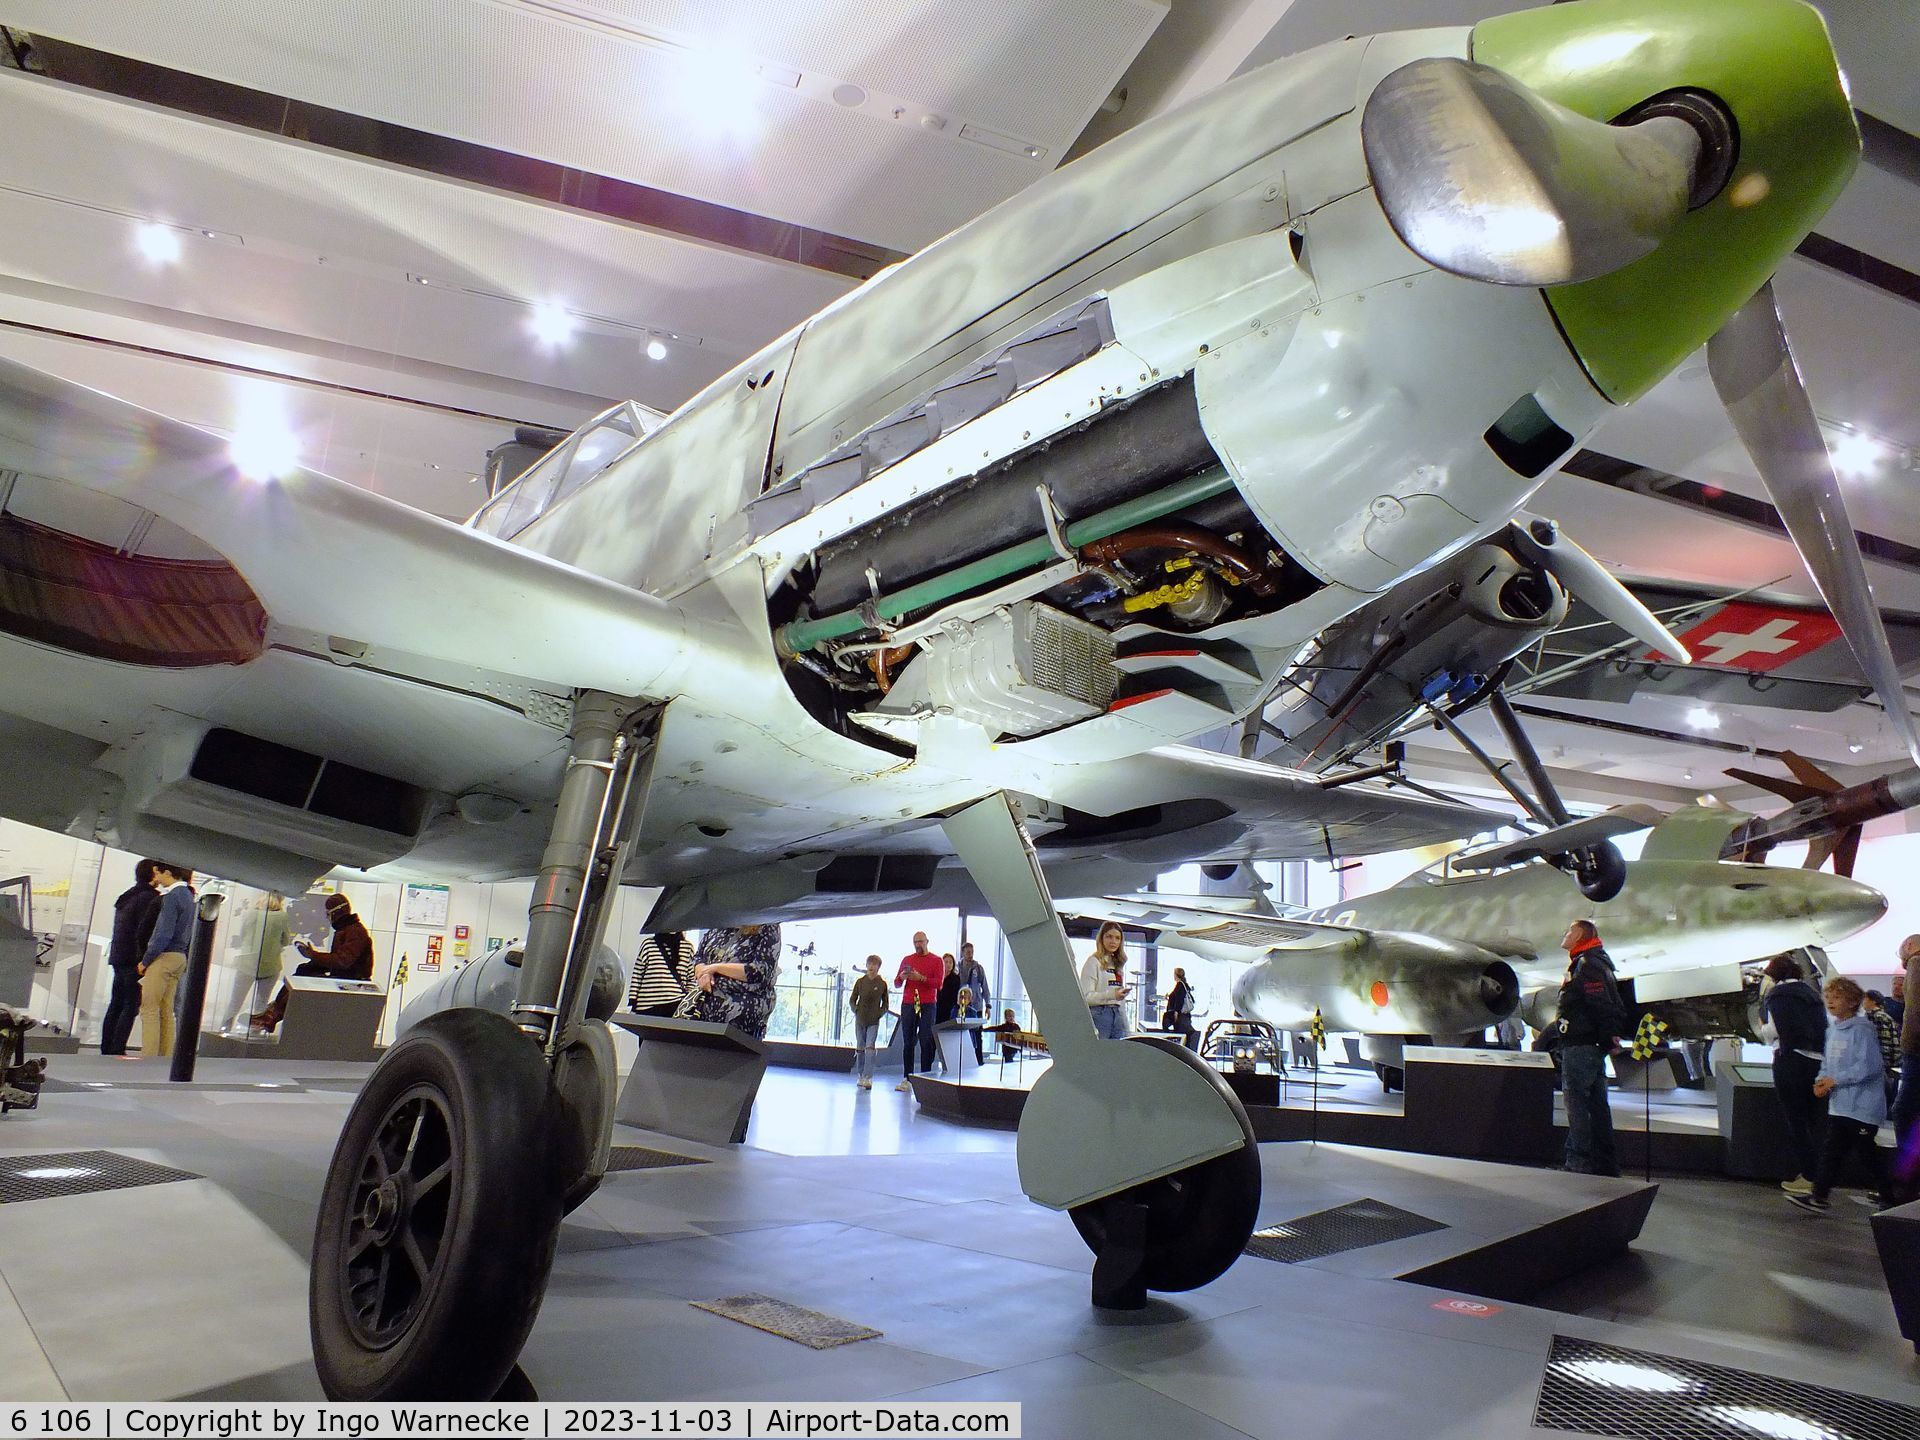 6 106, 1938 Messerschmitt Bf-109E-1 C/N 790, Messerschmitt Bf 109E-1, ex-Legion Condor, ex-Ejercito del Aire, displayed since 1973 in the markings of Werner Mölders' plane, at Deutsches Museum, München (Munich)